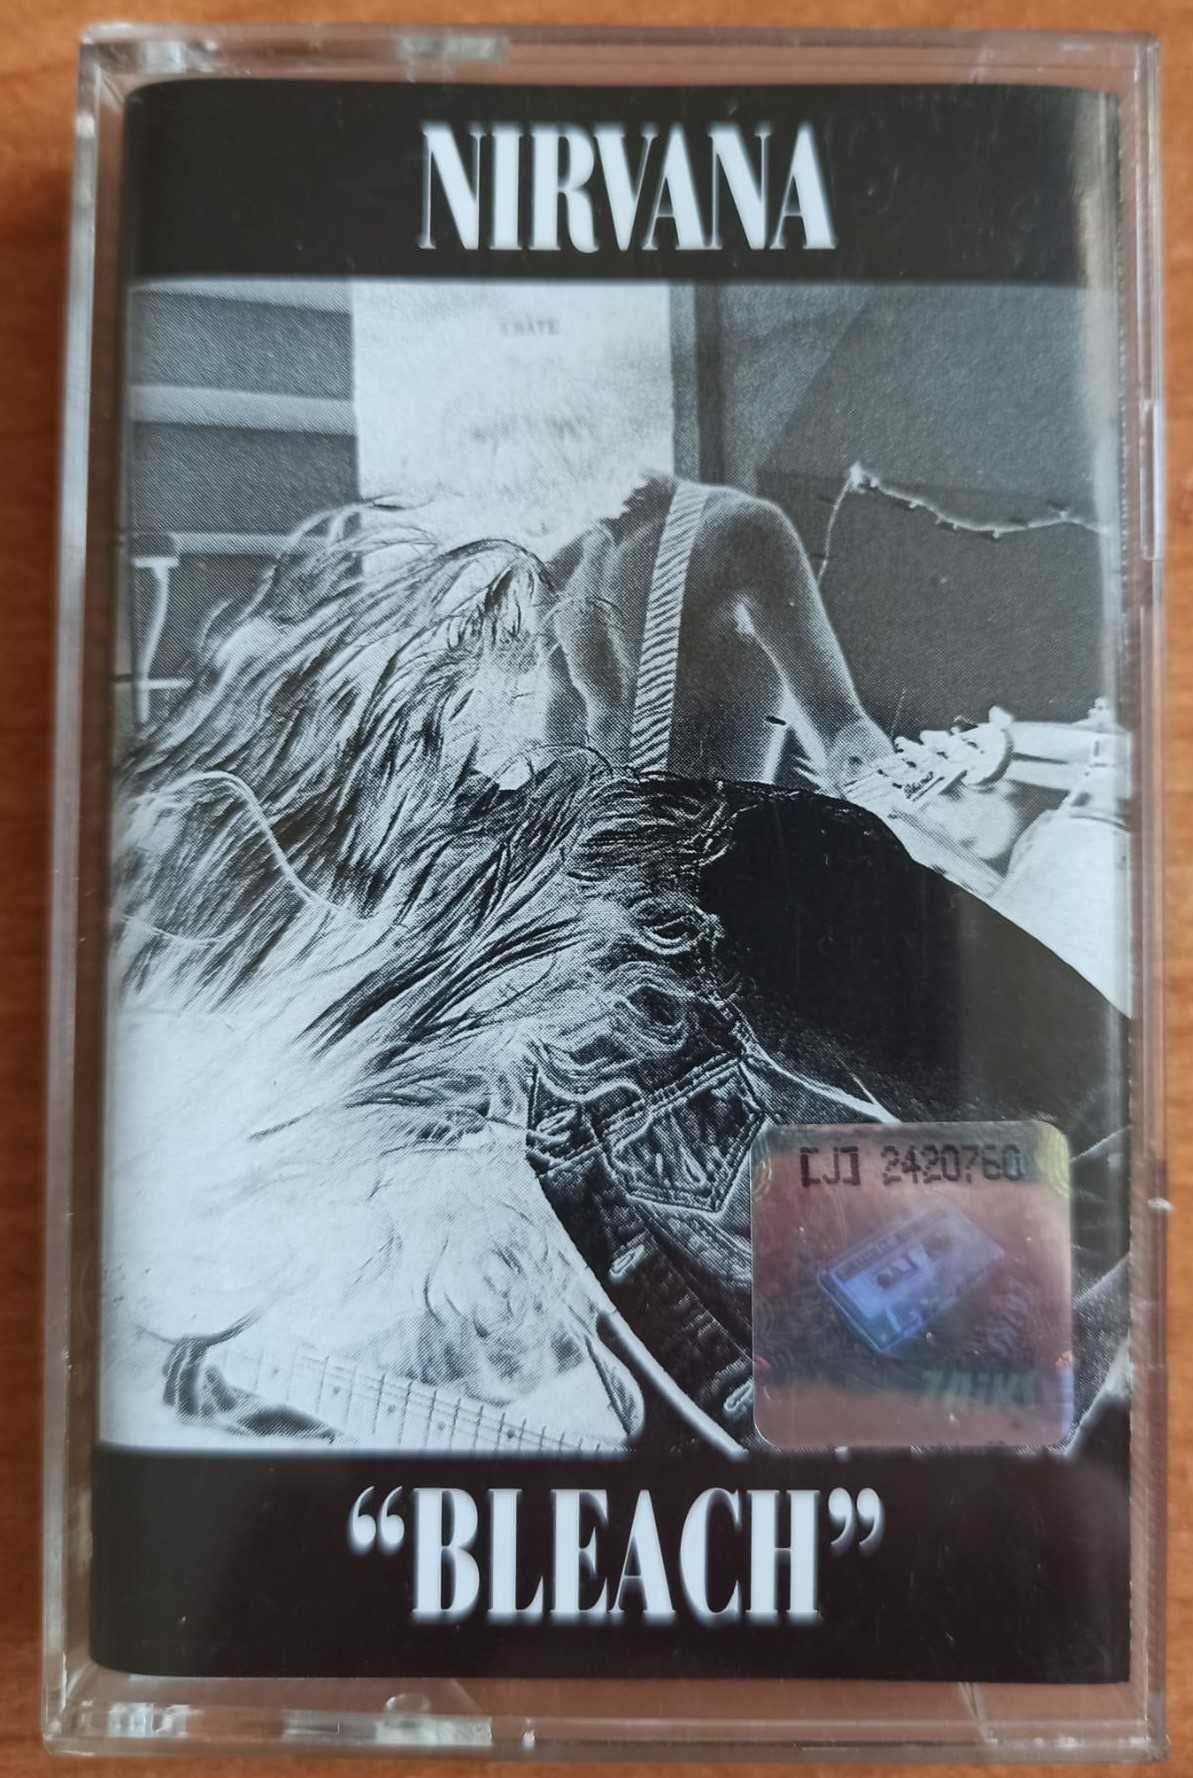 Sprzedam kasetę magnetofonową - Nirvana- Bleach kaseta